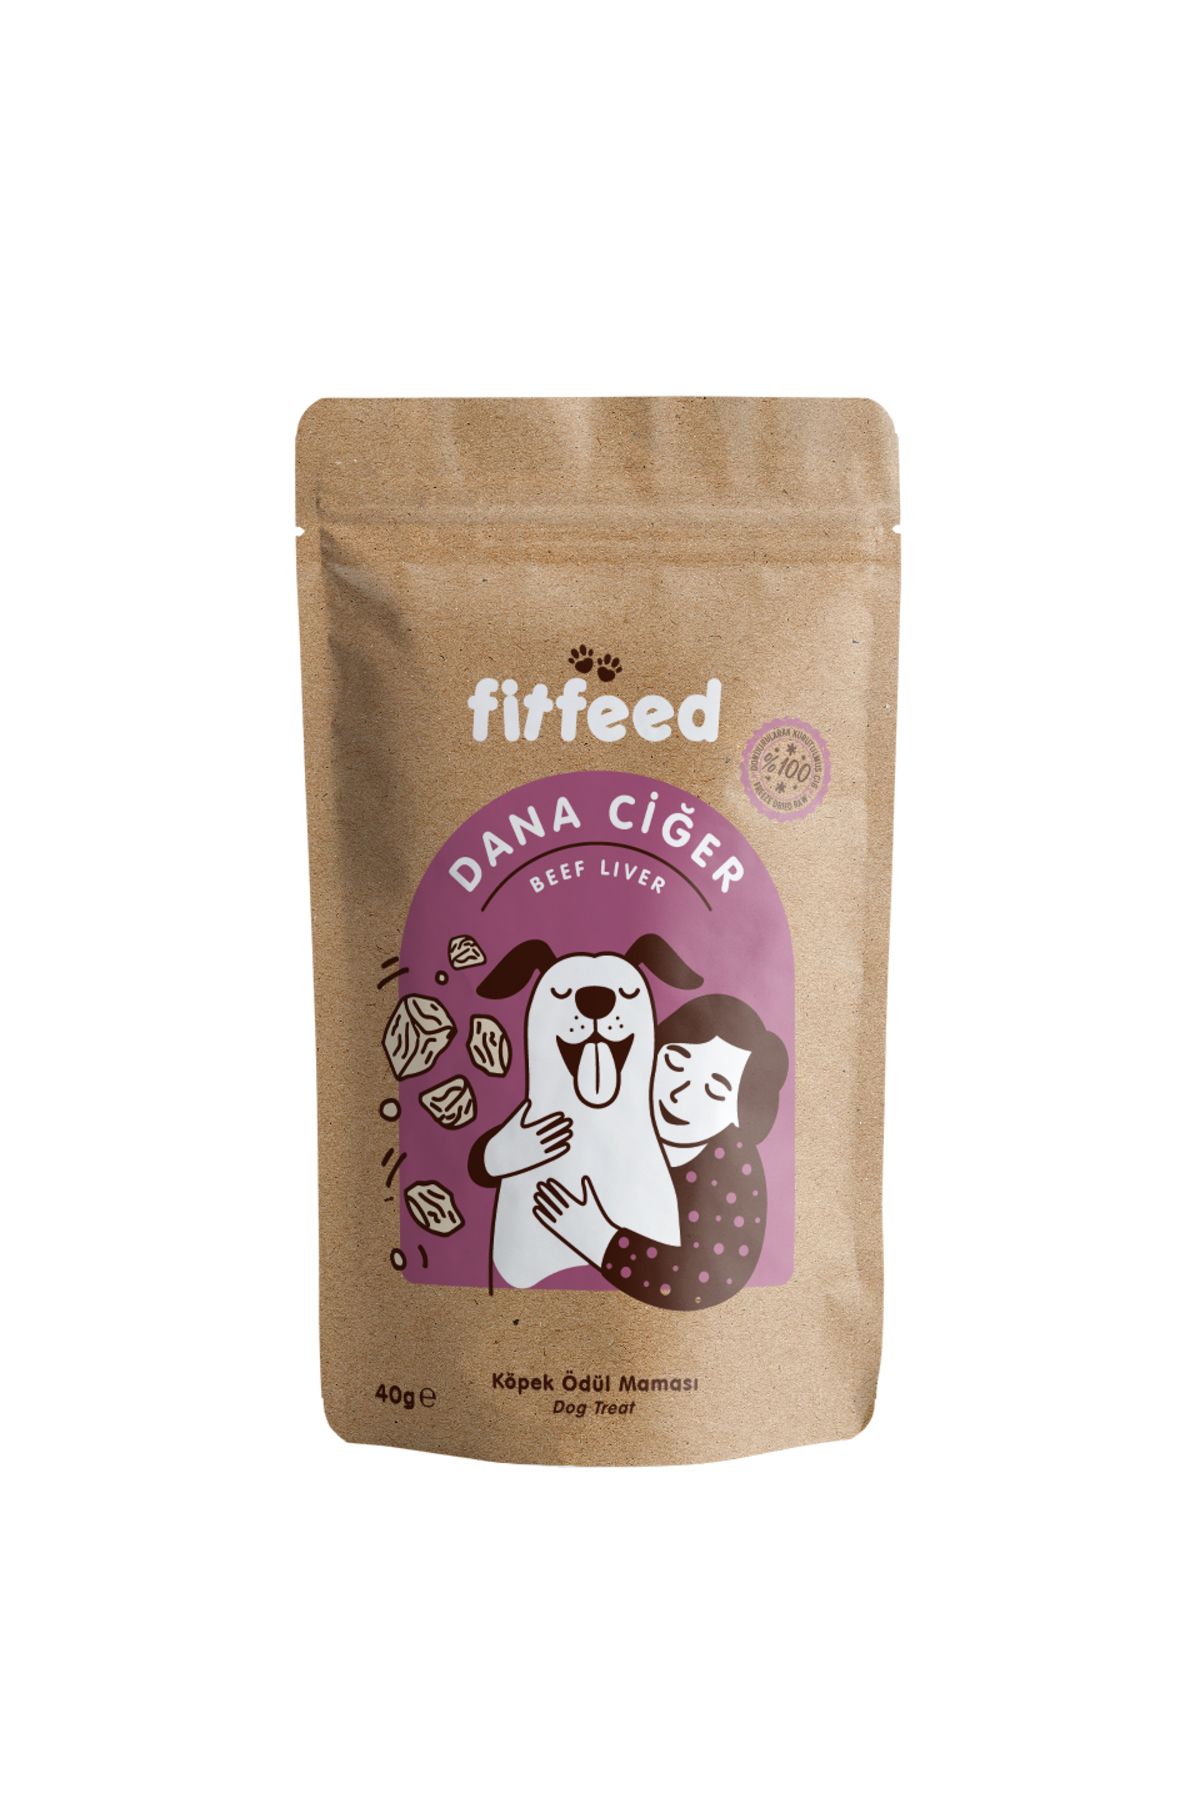 fitfeed Freeze Dry Çiğ Köpek Ödül Maması - %100 Dana Ciğer - 40g